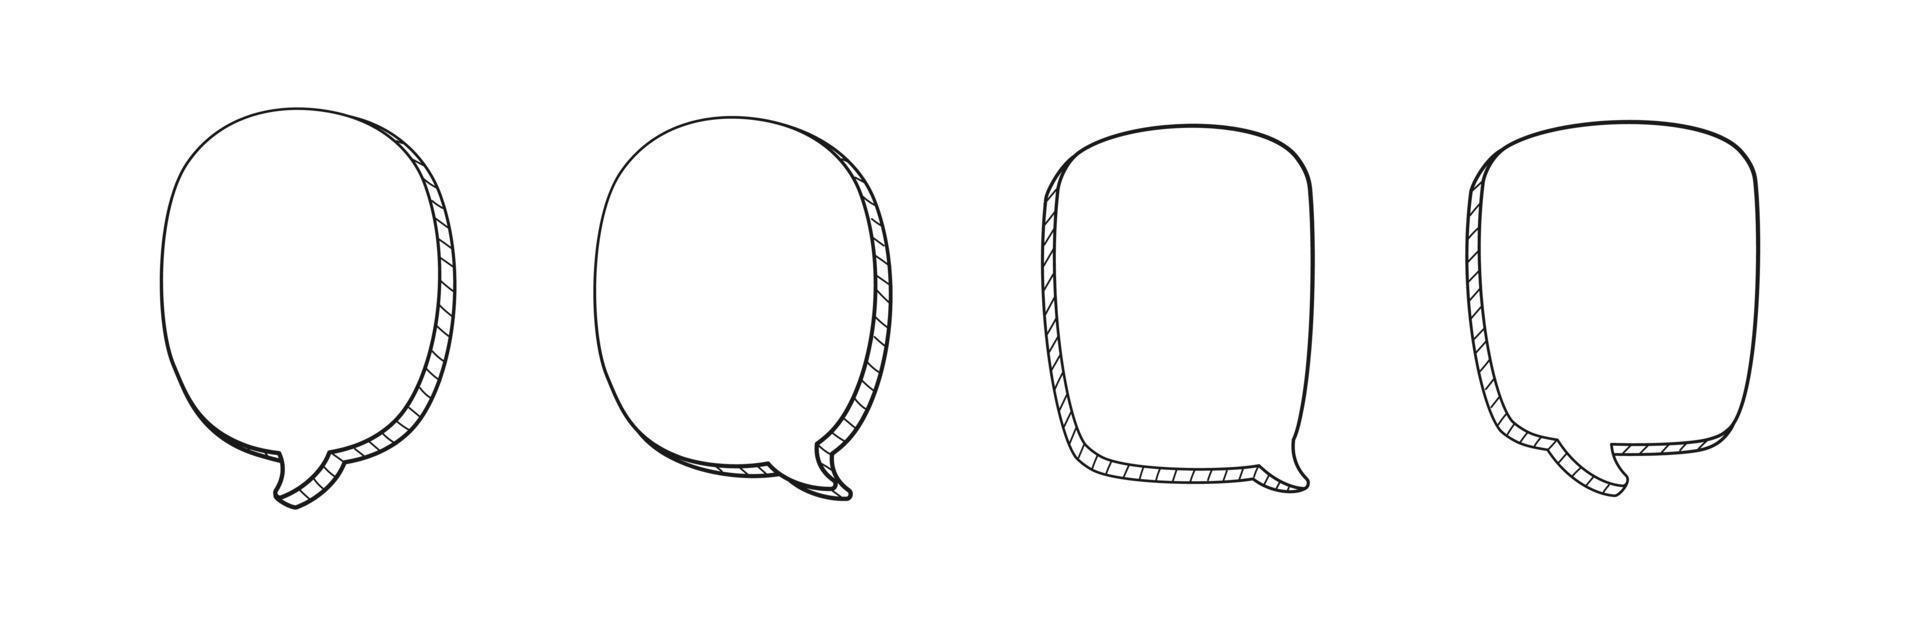 Comic 3D doodle speech bubble outline collection set vector illustration